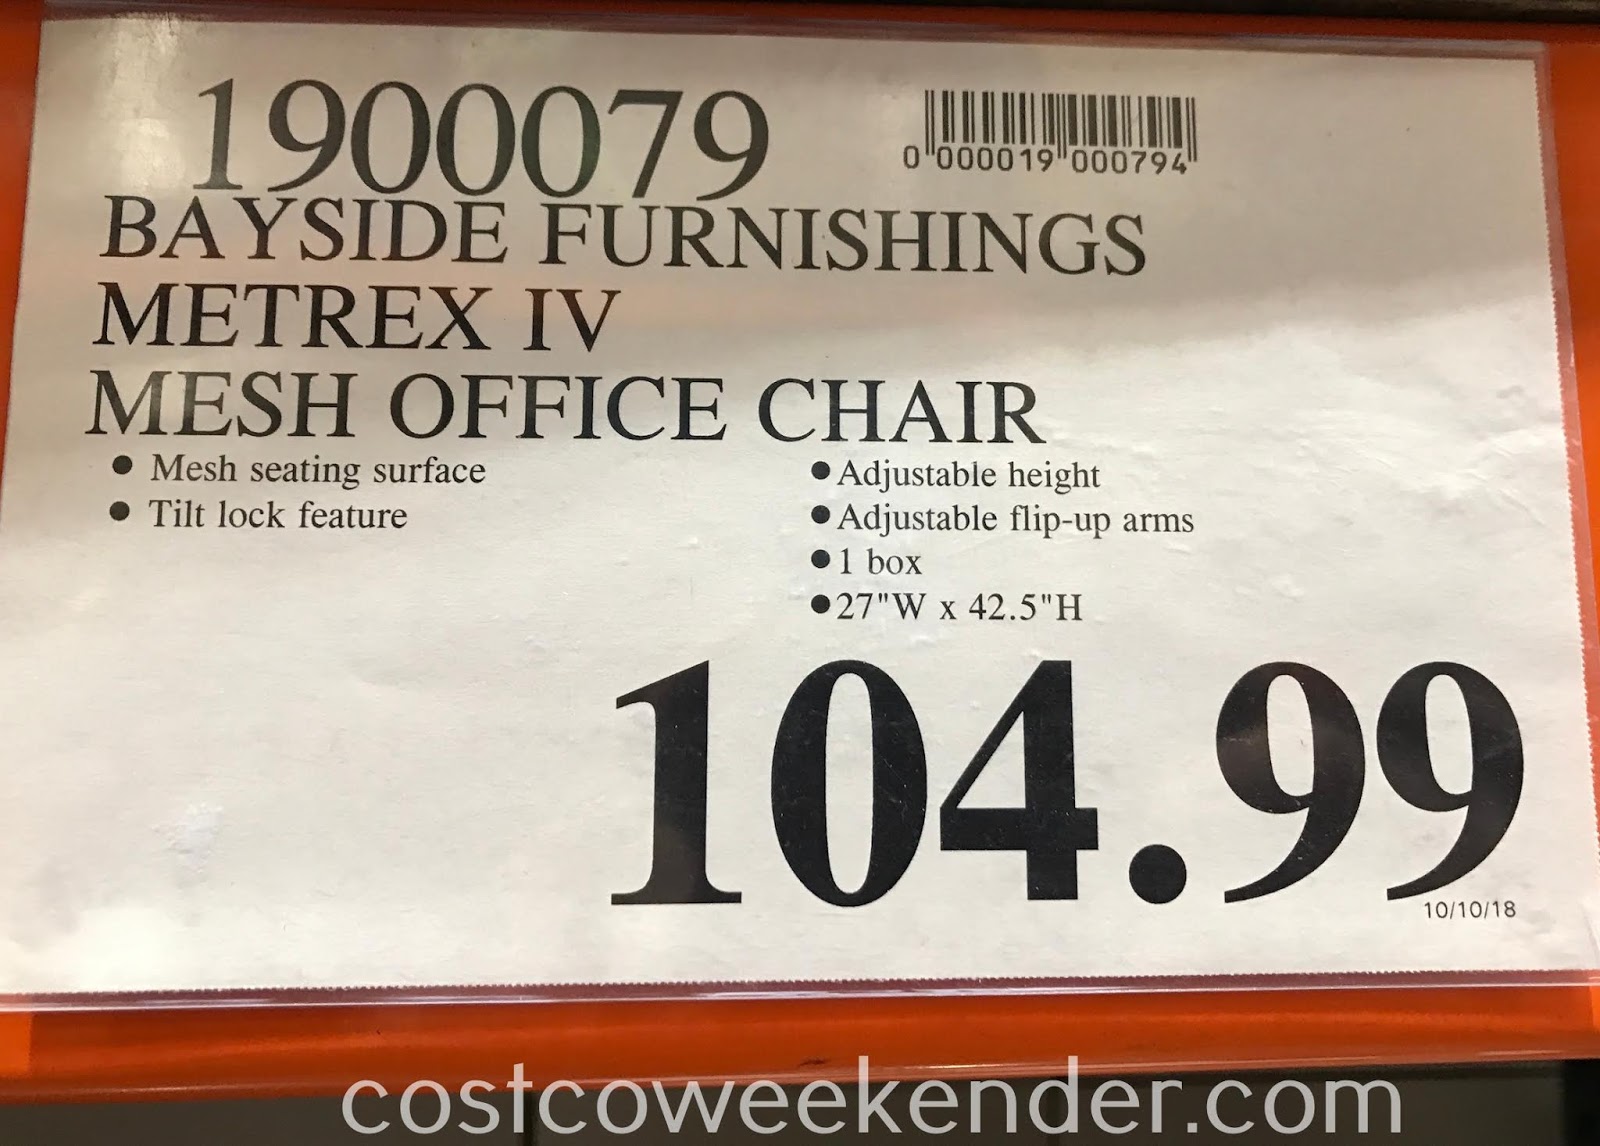 Bayside Furnishings Mesh Office Chair Costco Weekender